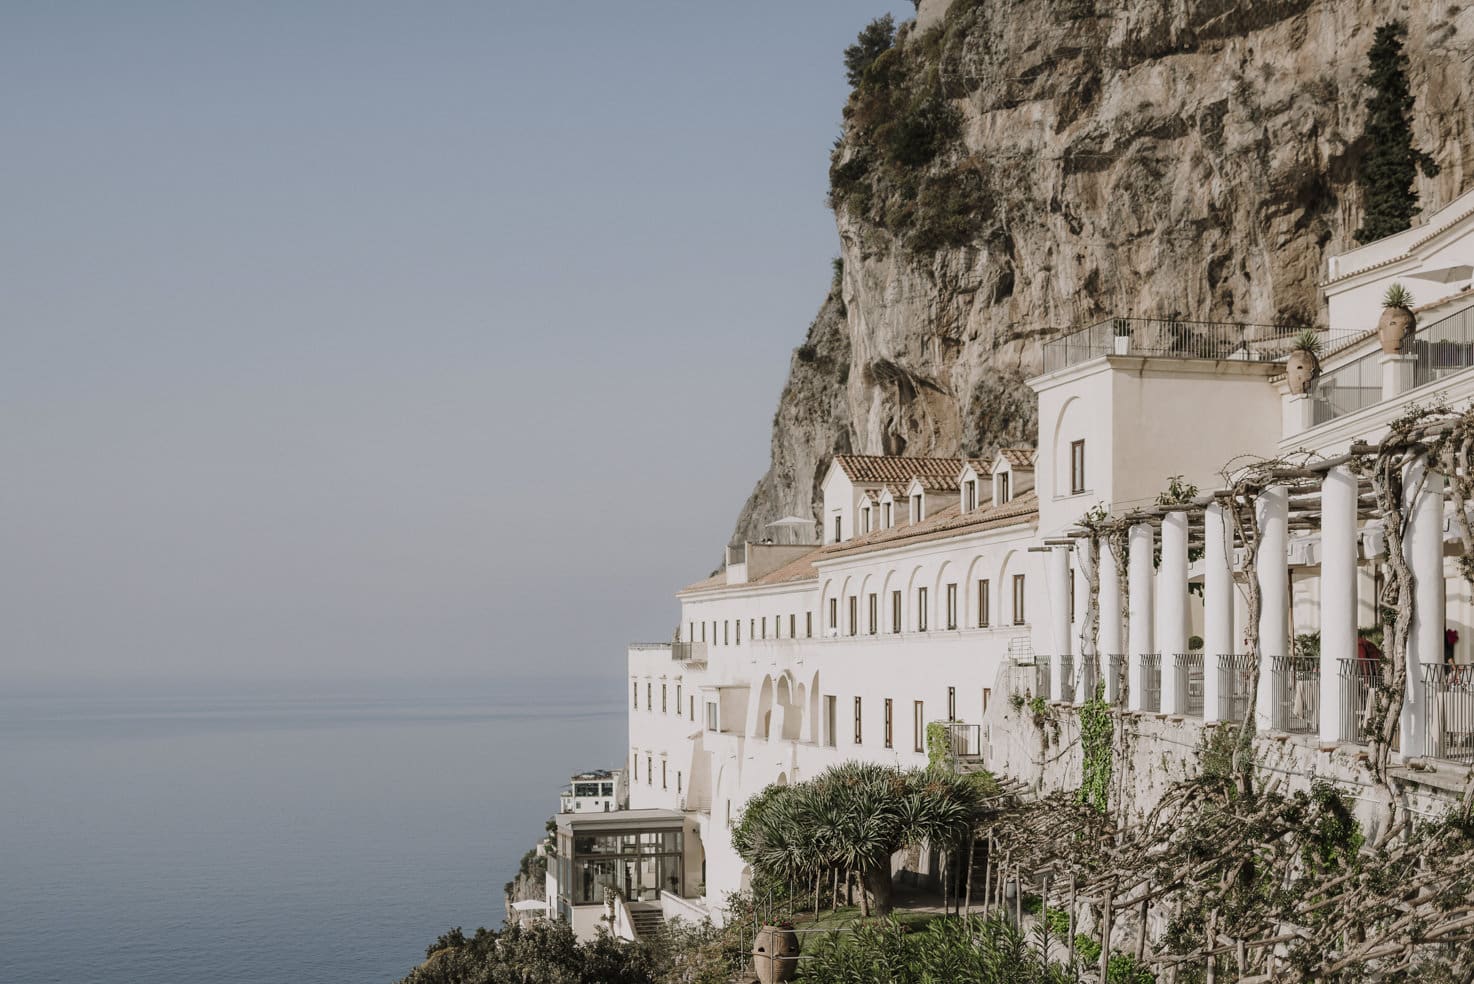 Vista majestuosa del Grand Hotel Convento en la cima del acantilado sobre el Mediterráneo.